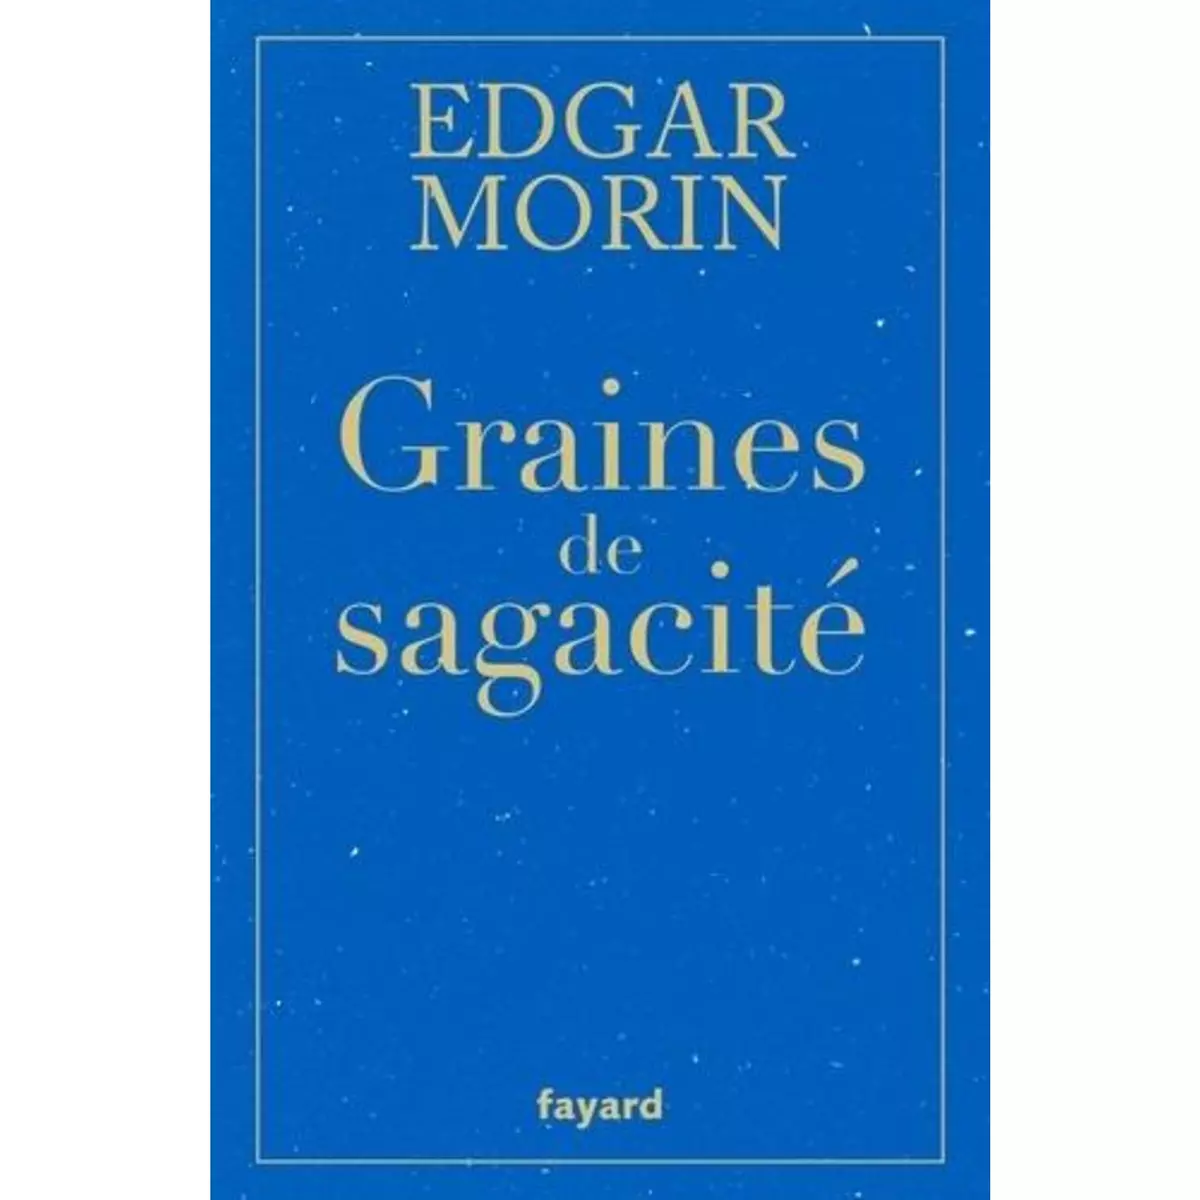  GRAINES DE SAGACITE, Morin Edgar